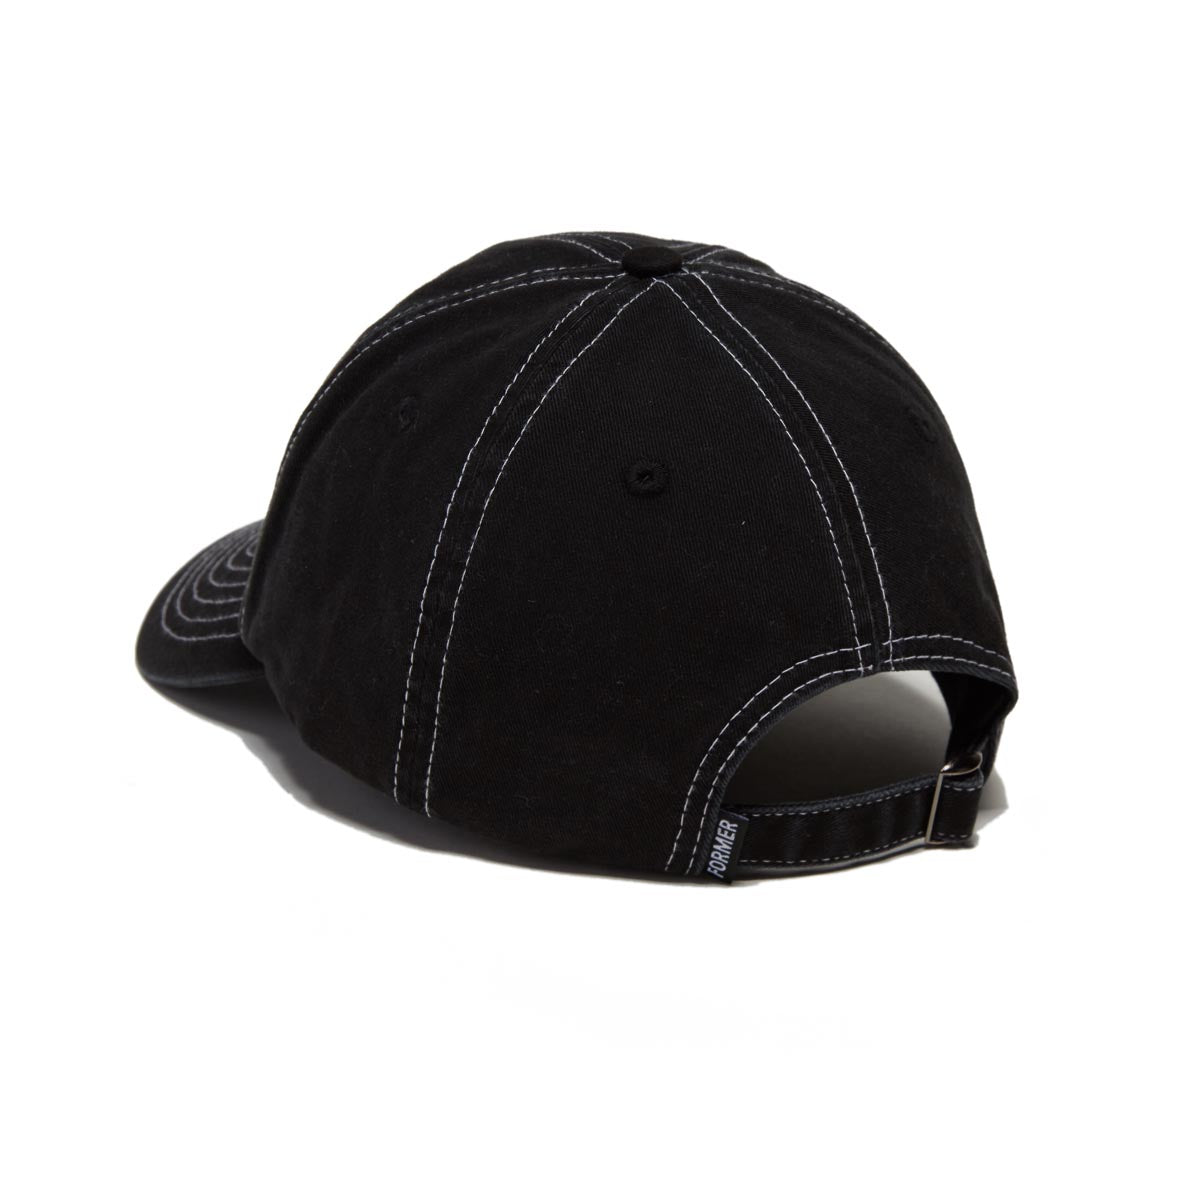 Former Suspension Contrast Hat - Black image 2